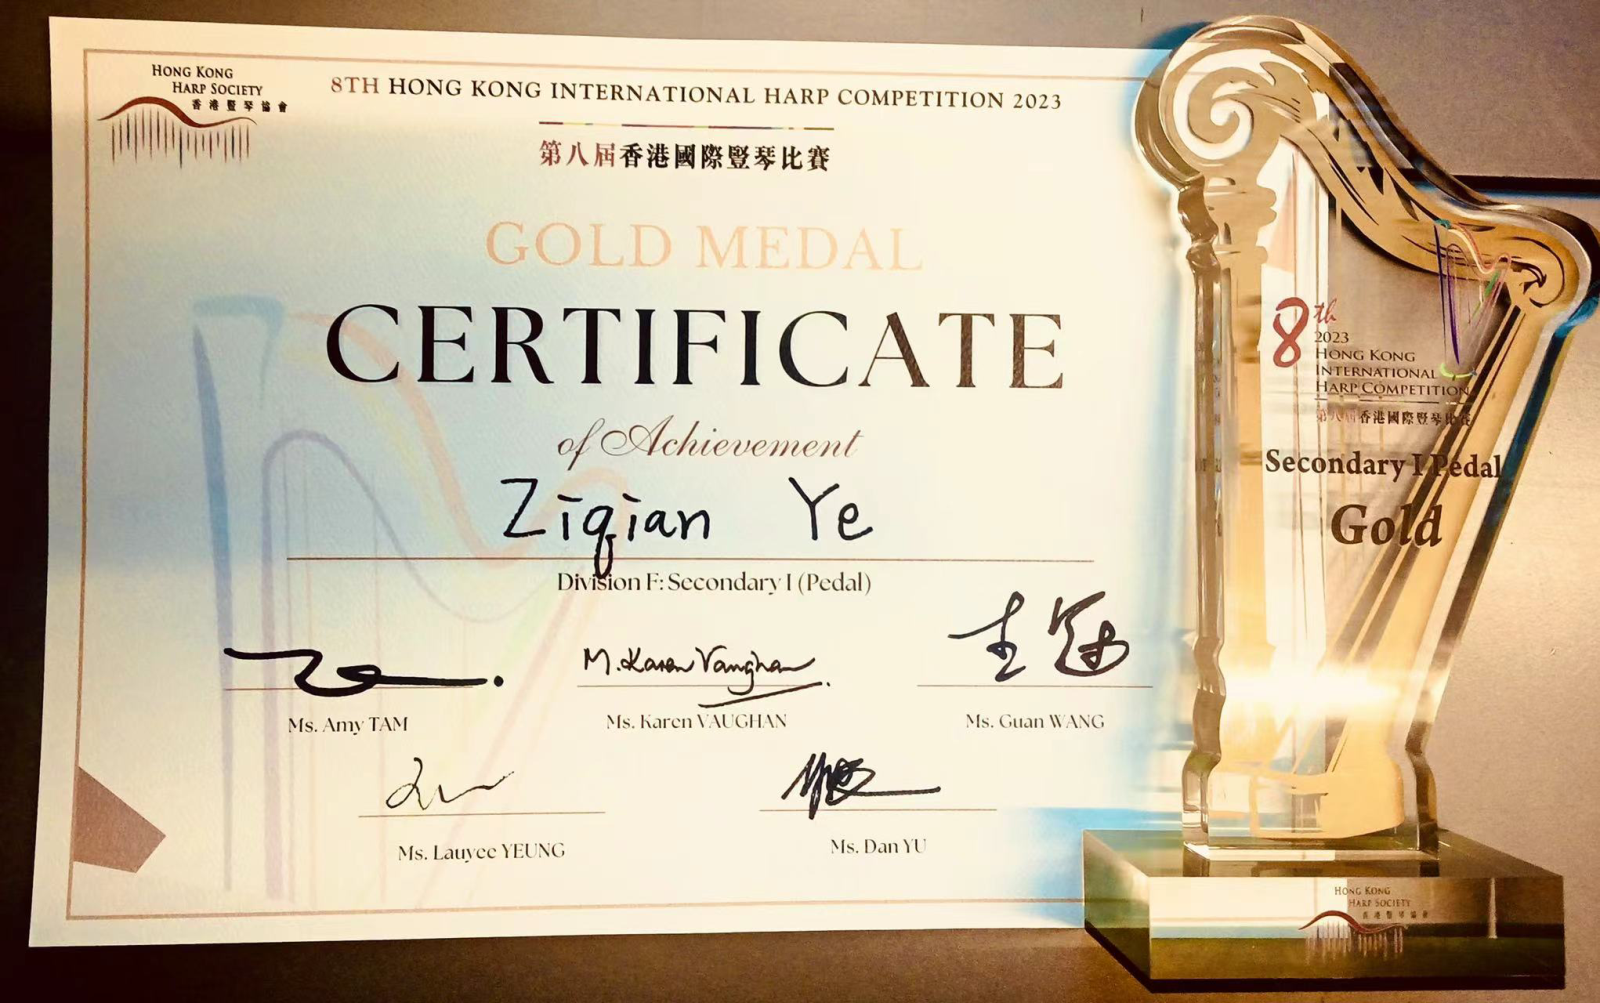 管弦系附中竖琴专业学生叶子芊荣获第8届香港国际竖琴比赛初中组第一名